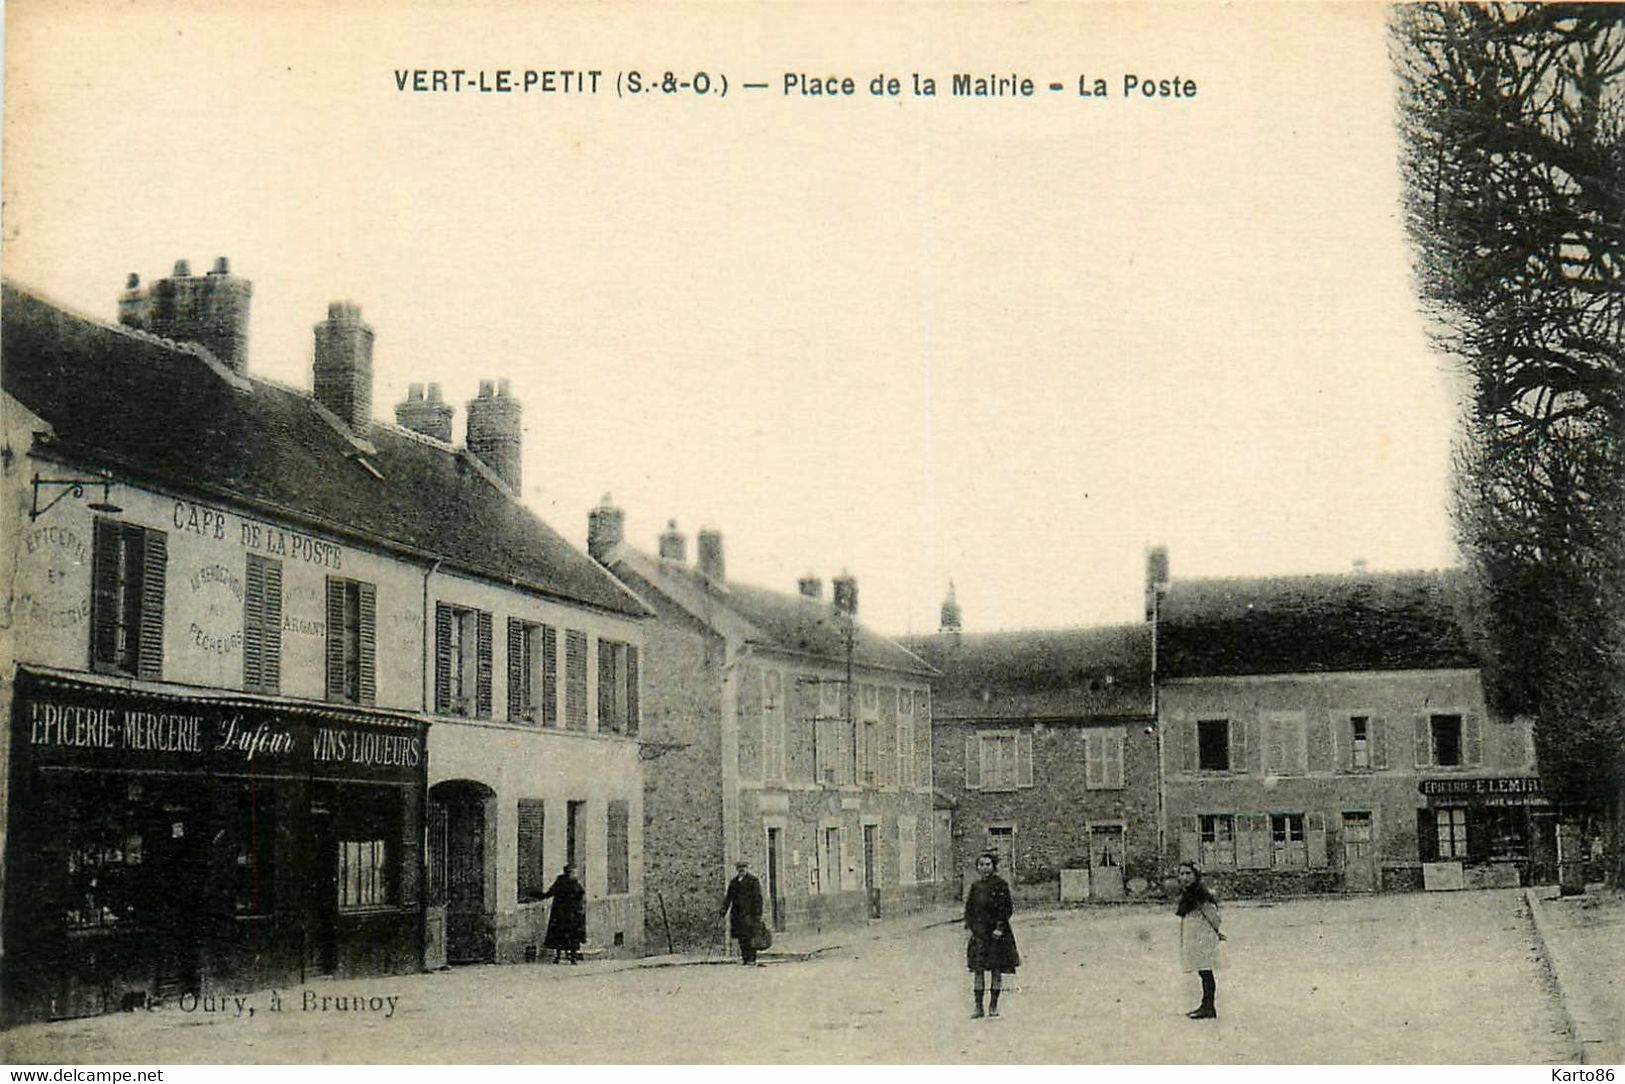 Vert Le Petit * La Place De La Mairie * La Poste * Café De La Poste * épicerie Mercerie DUFOUR - Vert-le-Petit